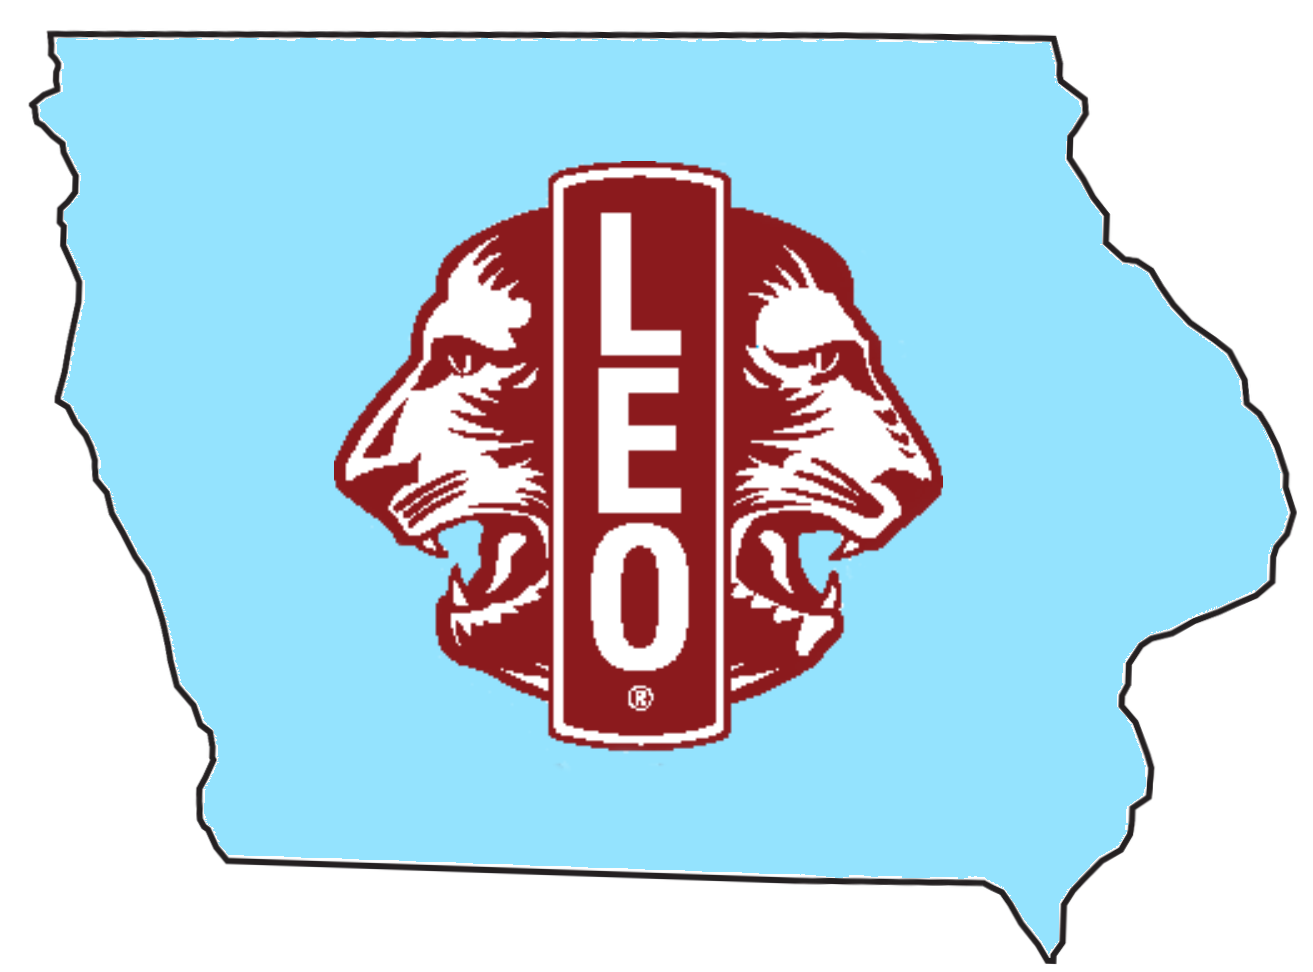 Iowa Leo Clubs